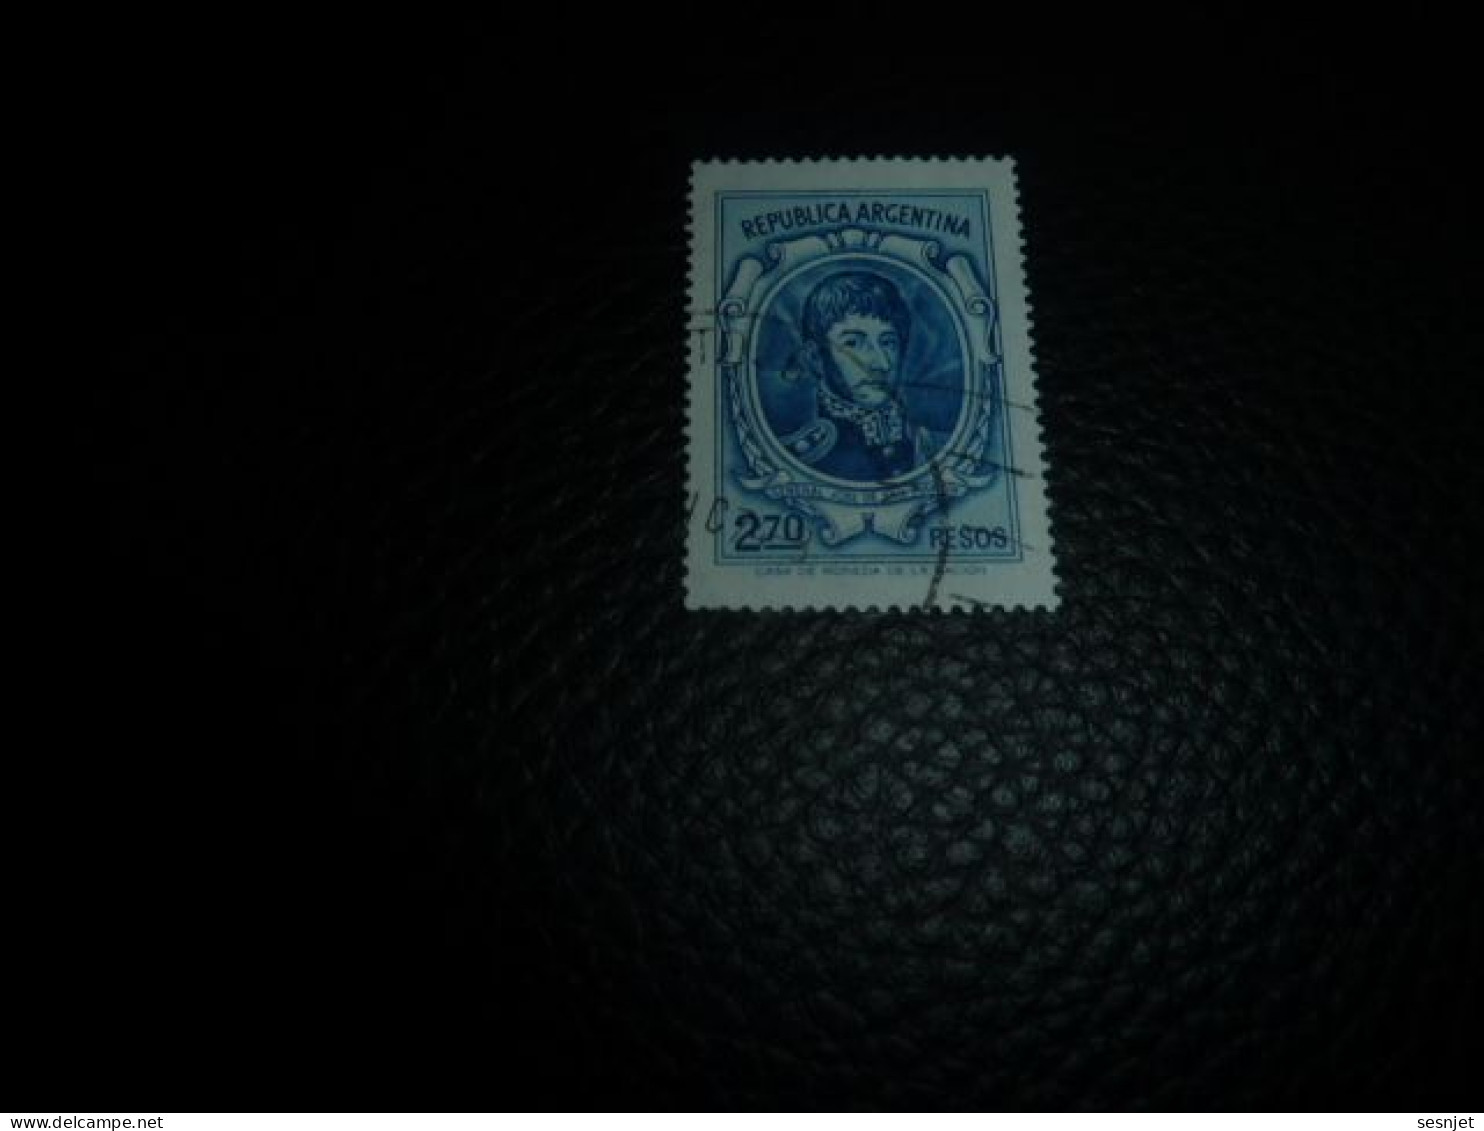 Republica Argentina - Général José De San Martin - 2.70 Pesos - Yt 975 - Bleu - Oblitéré - Année 1974 - - Oblitérés